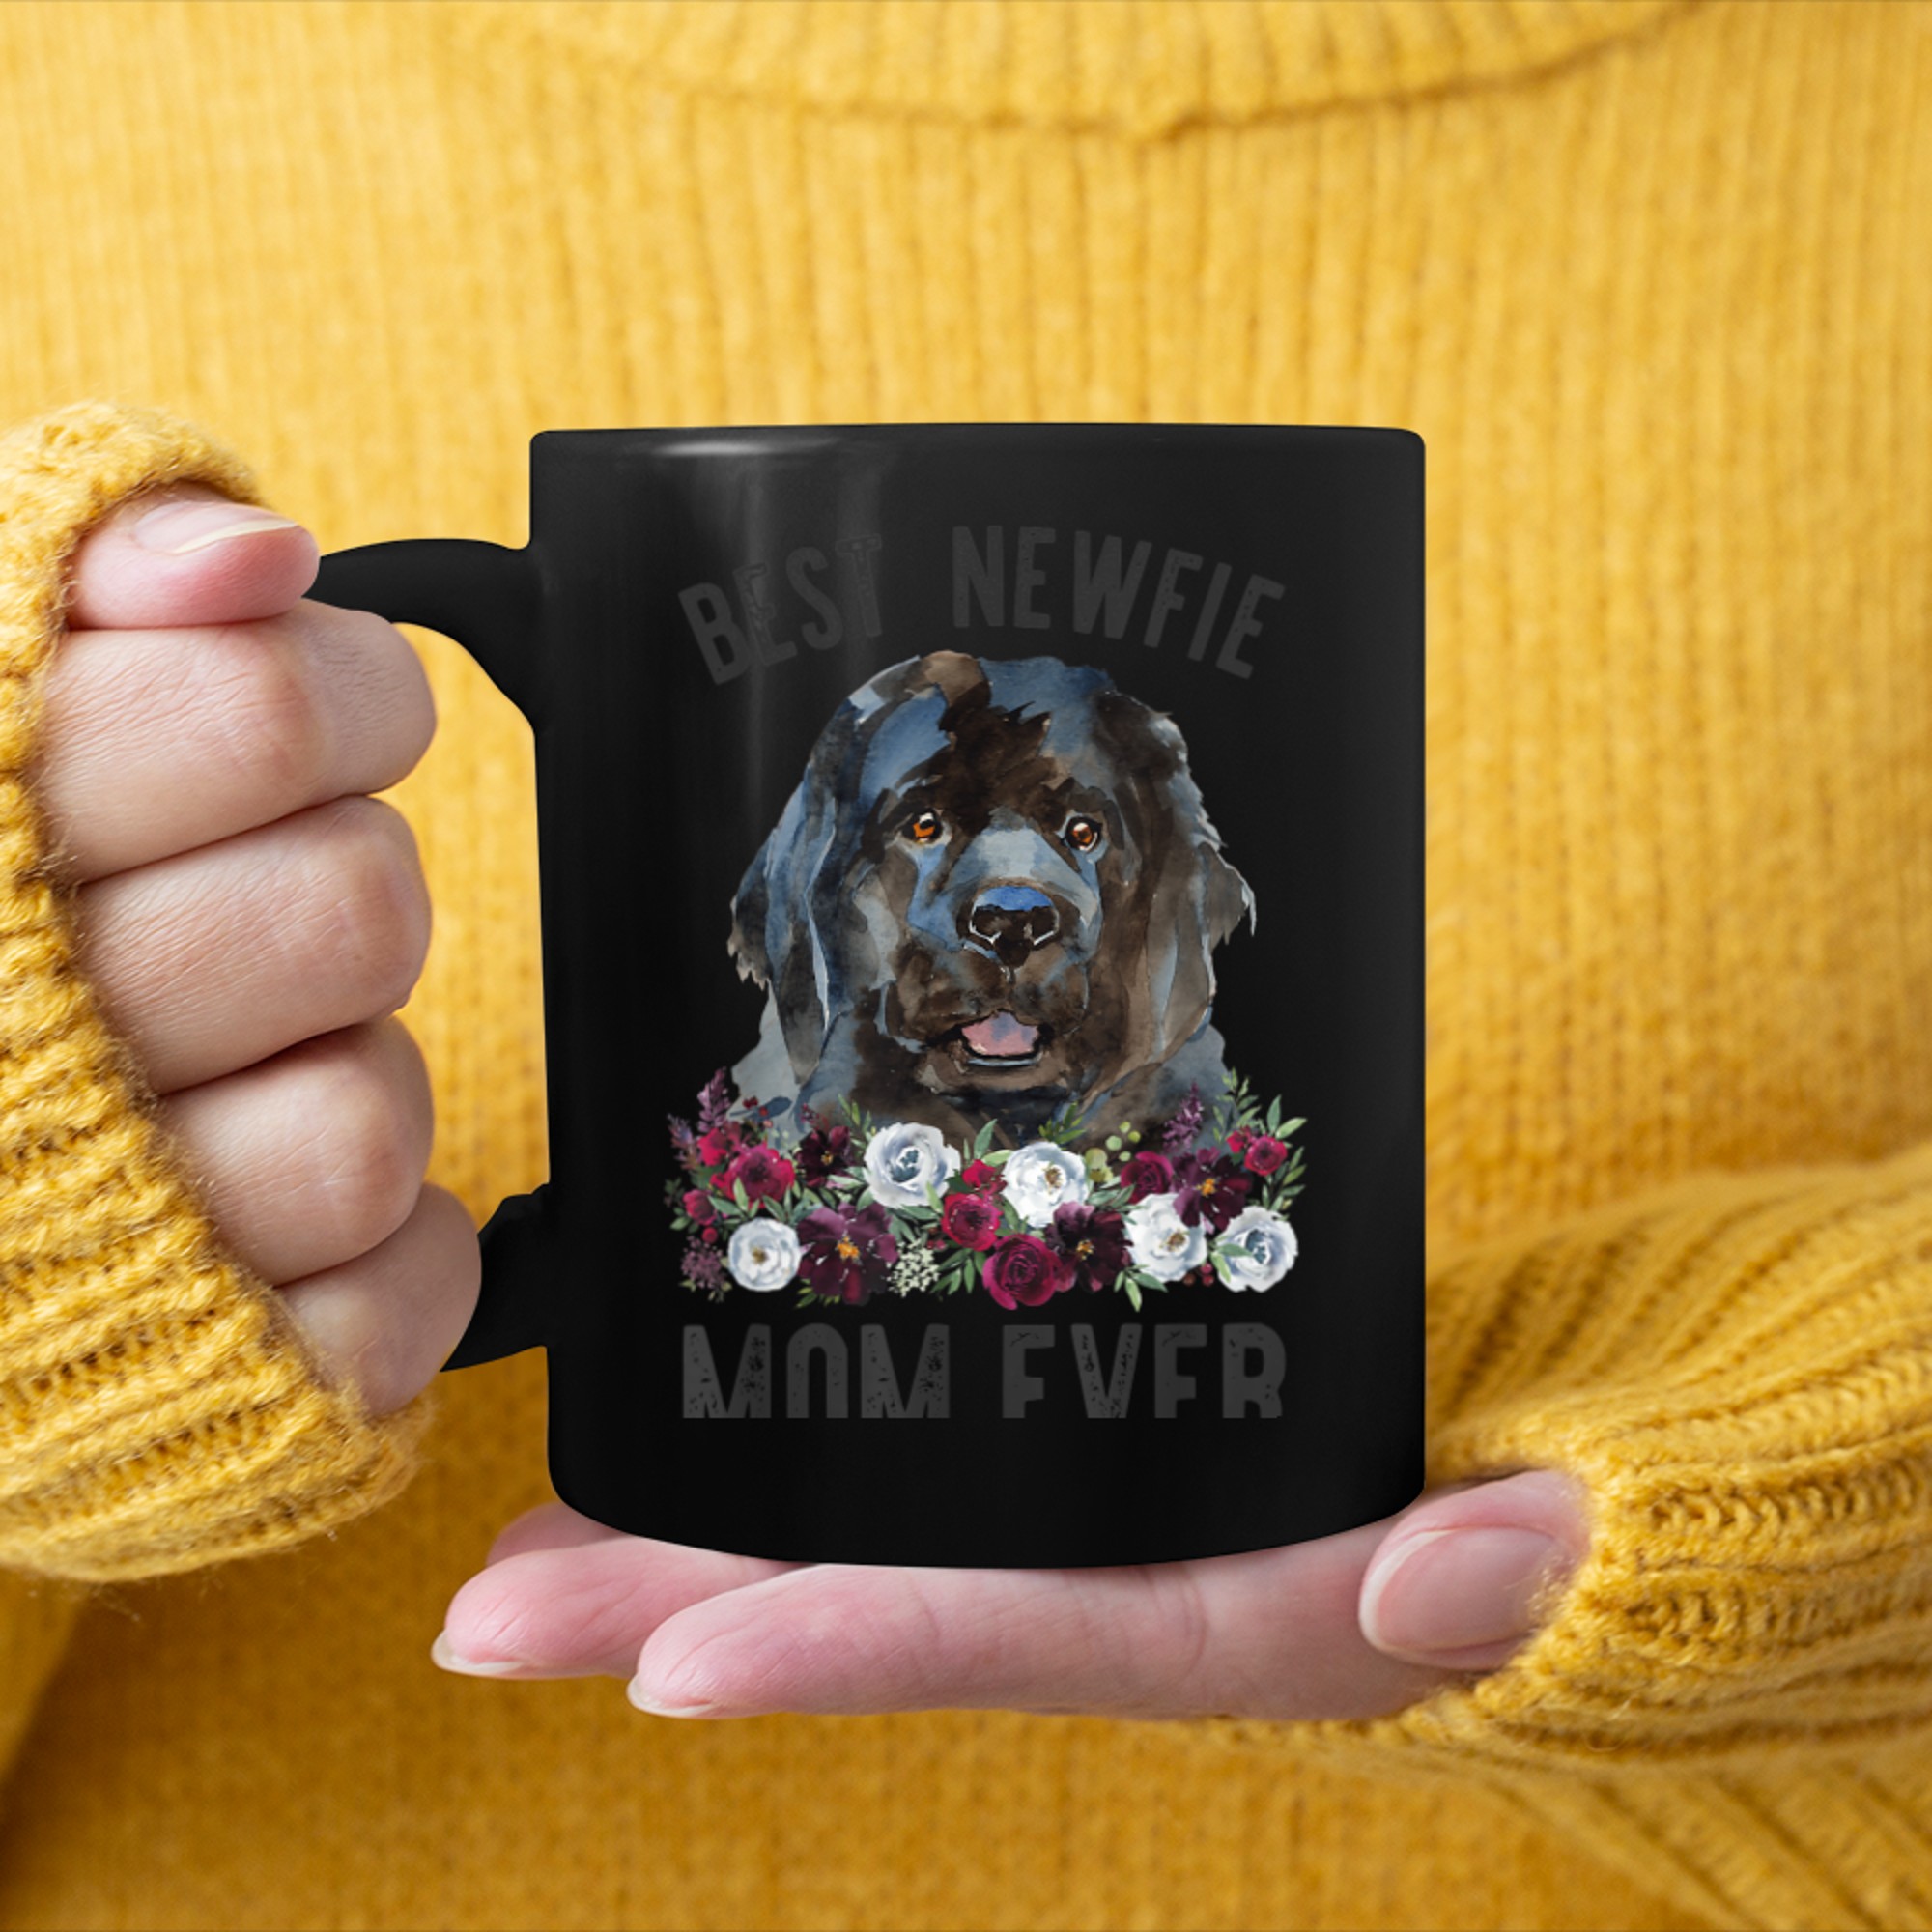 Best Newfie Mom Ever Floral Newfoundland Dog mug black